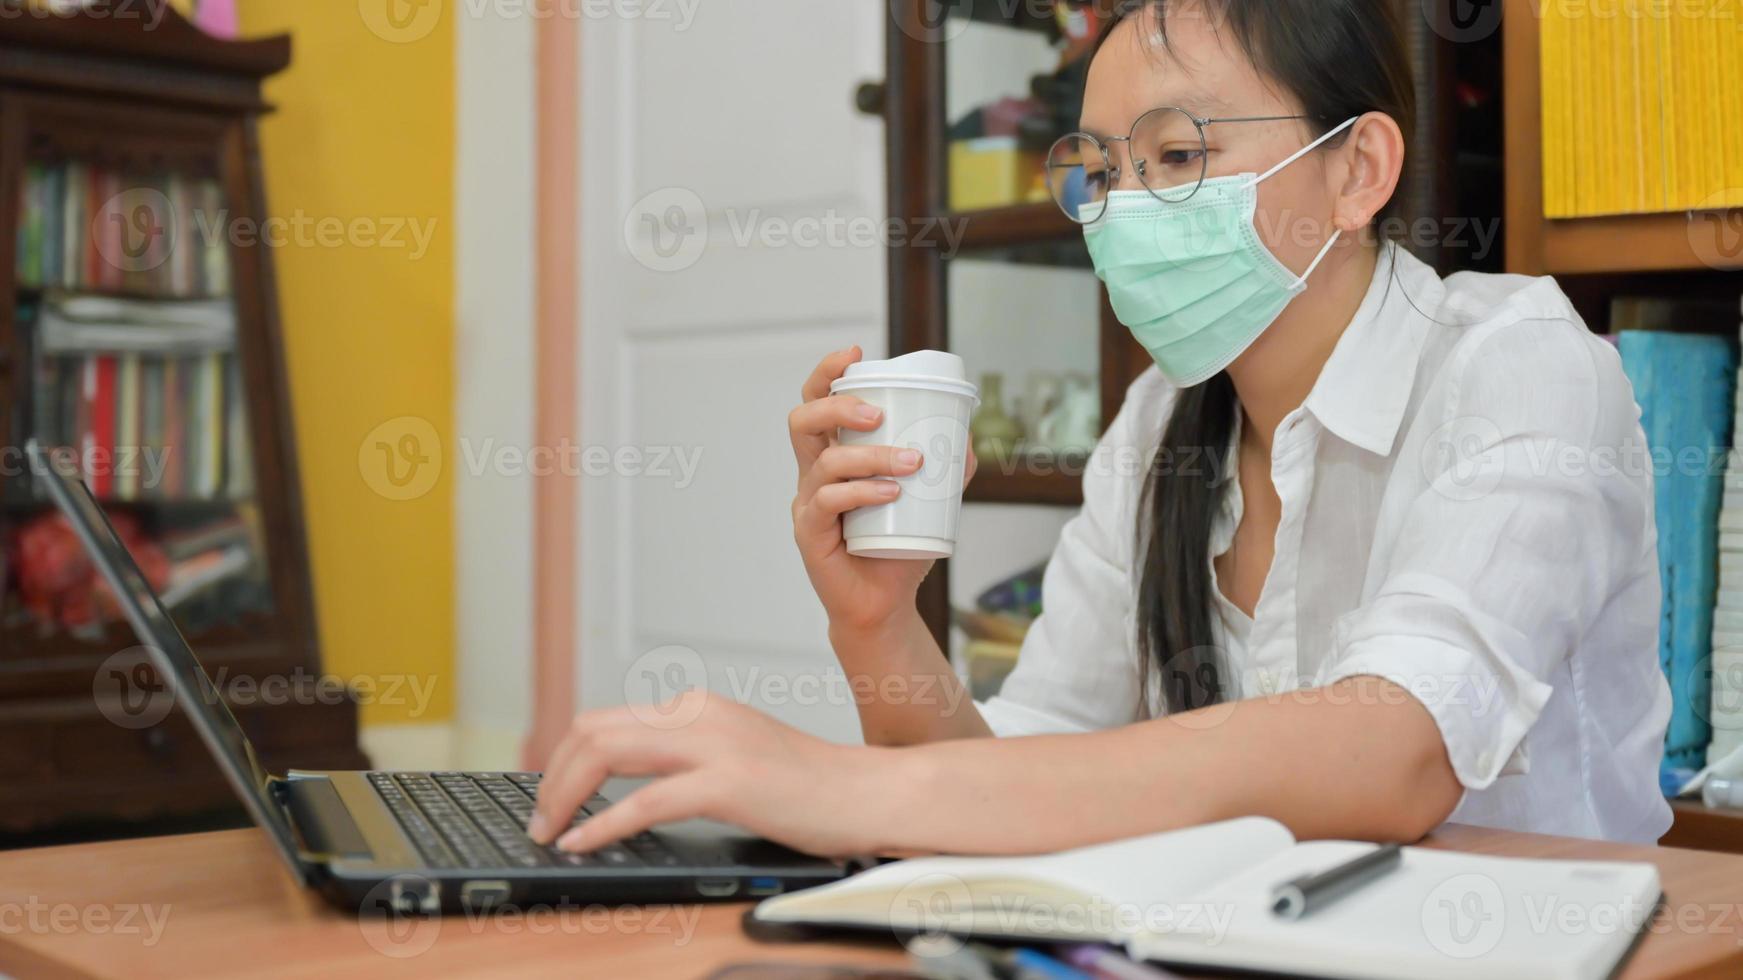 asiatische Frauenmaske, die eine Kaffeetasse hält und einen Laptop verwendet. Sie arbeitet zu Hause, um sich vor dem Koronavirus oder Covid-19 zu schützen. foto